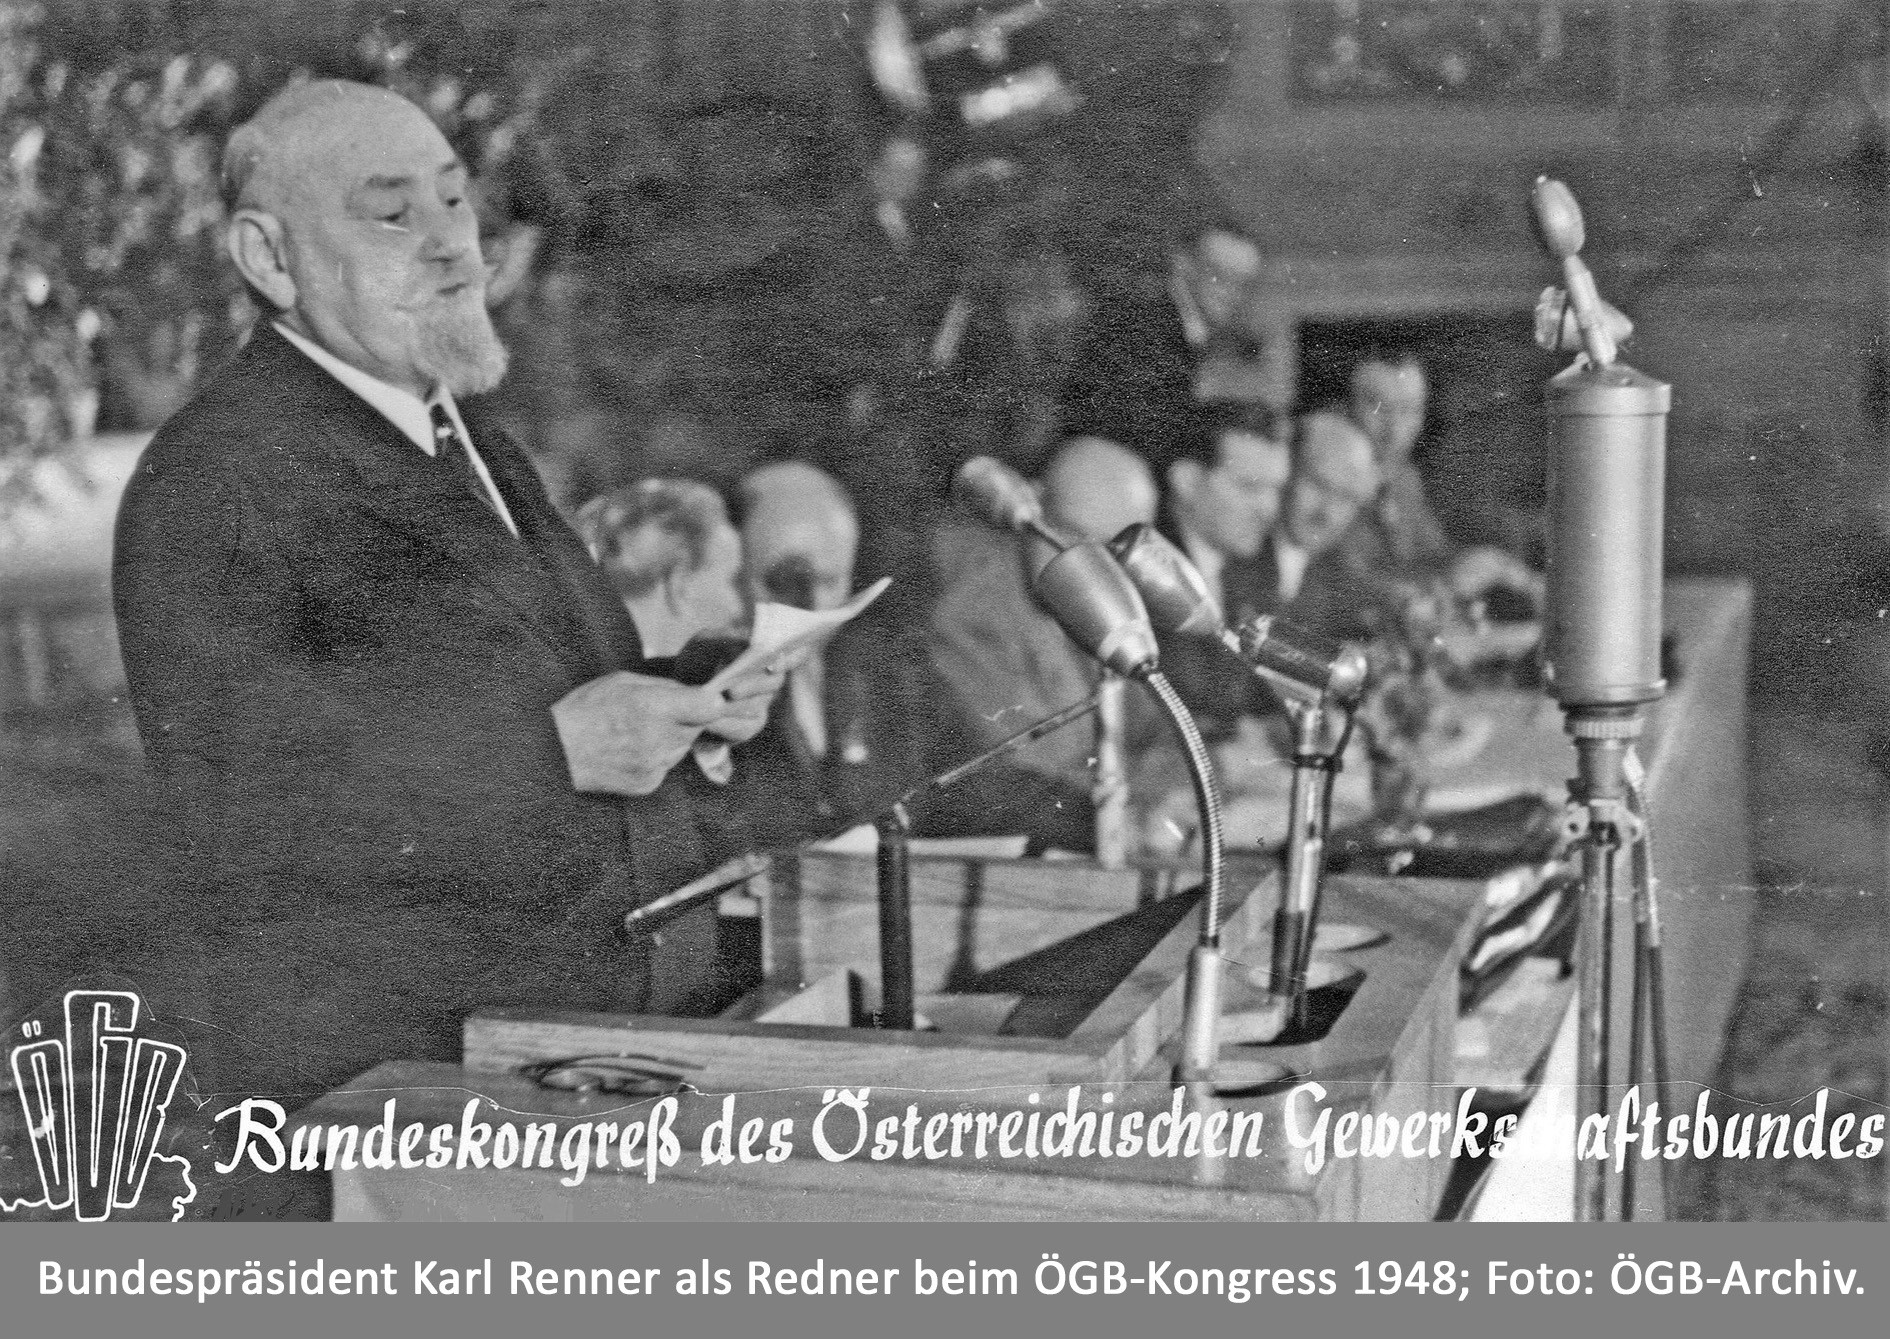 Karl Renner als Redner beim ersten ÖGB-Kongress. Symbolbild für den Sozialstaat und seine Geschichte.